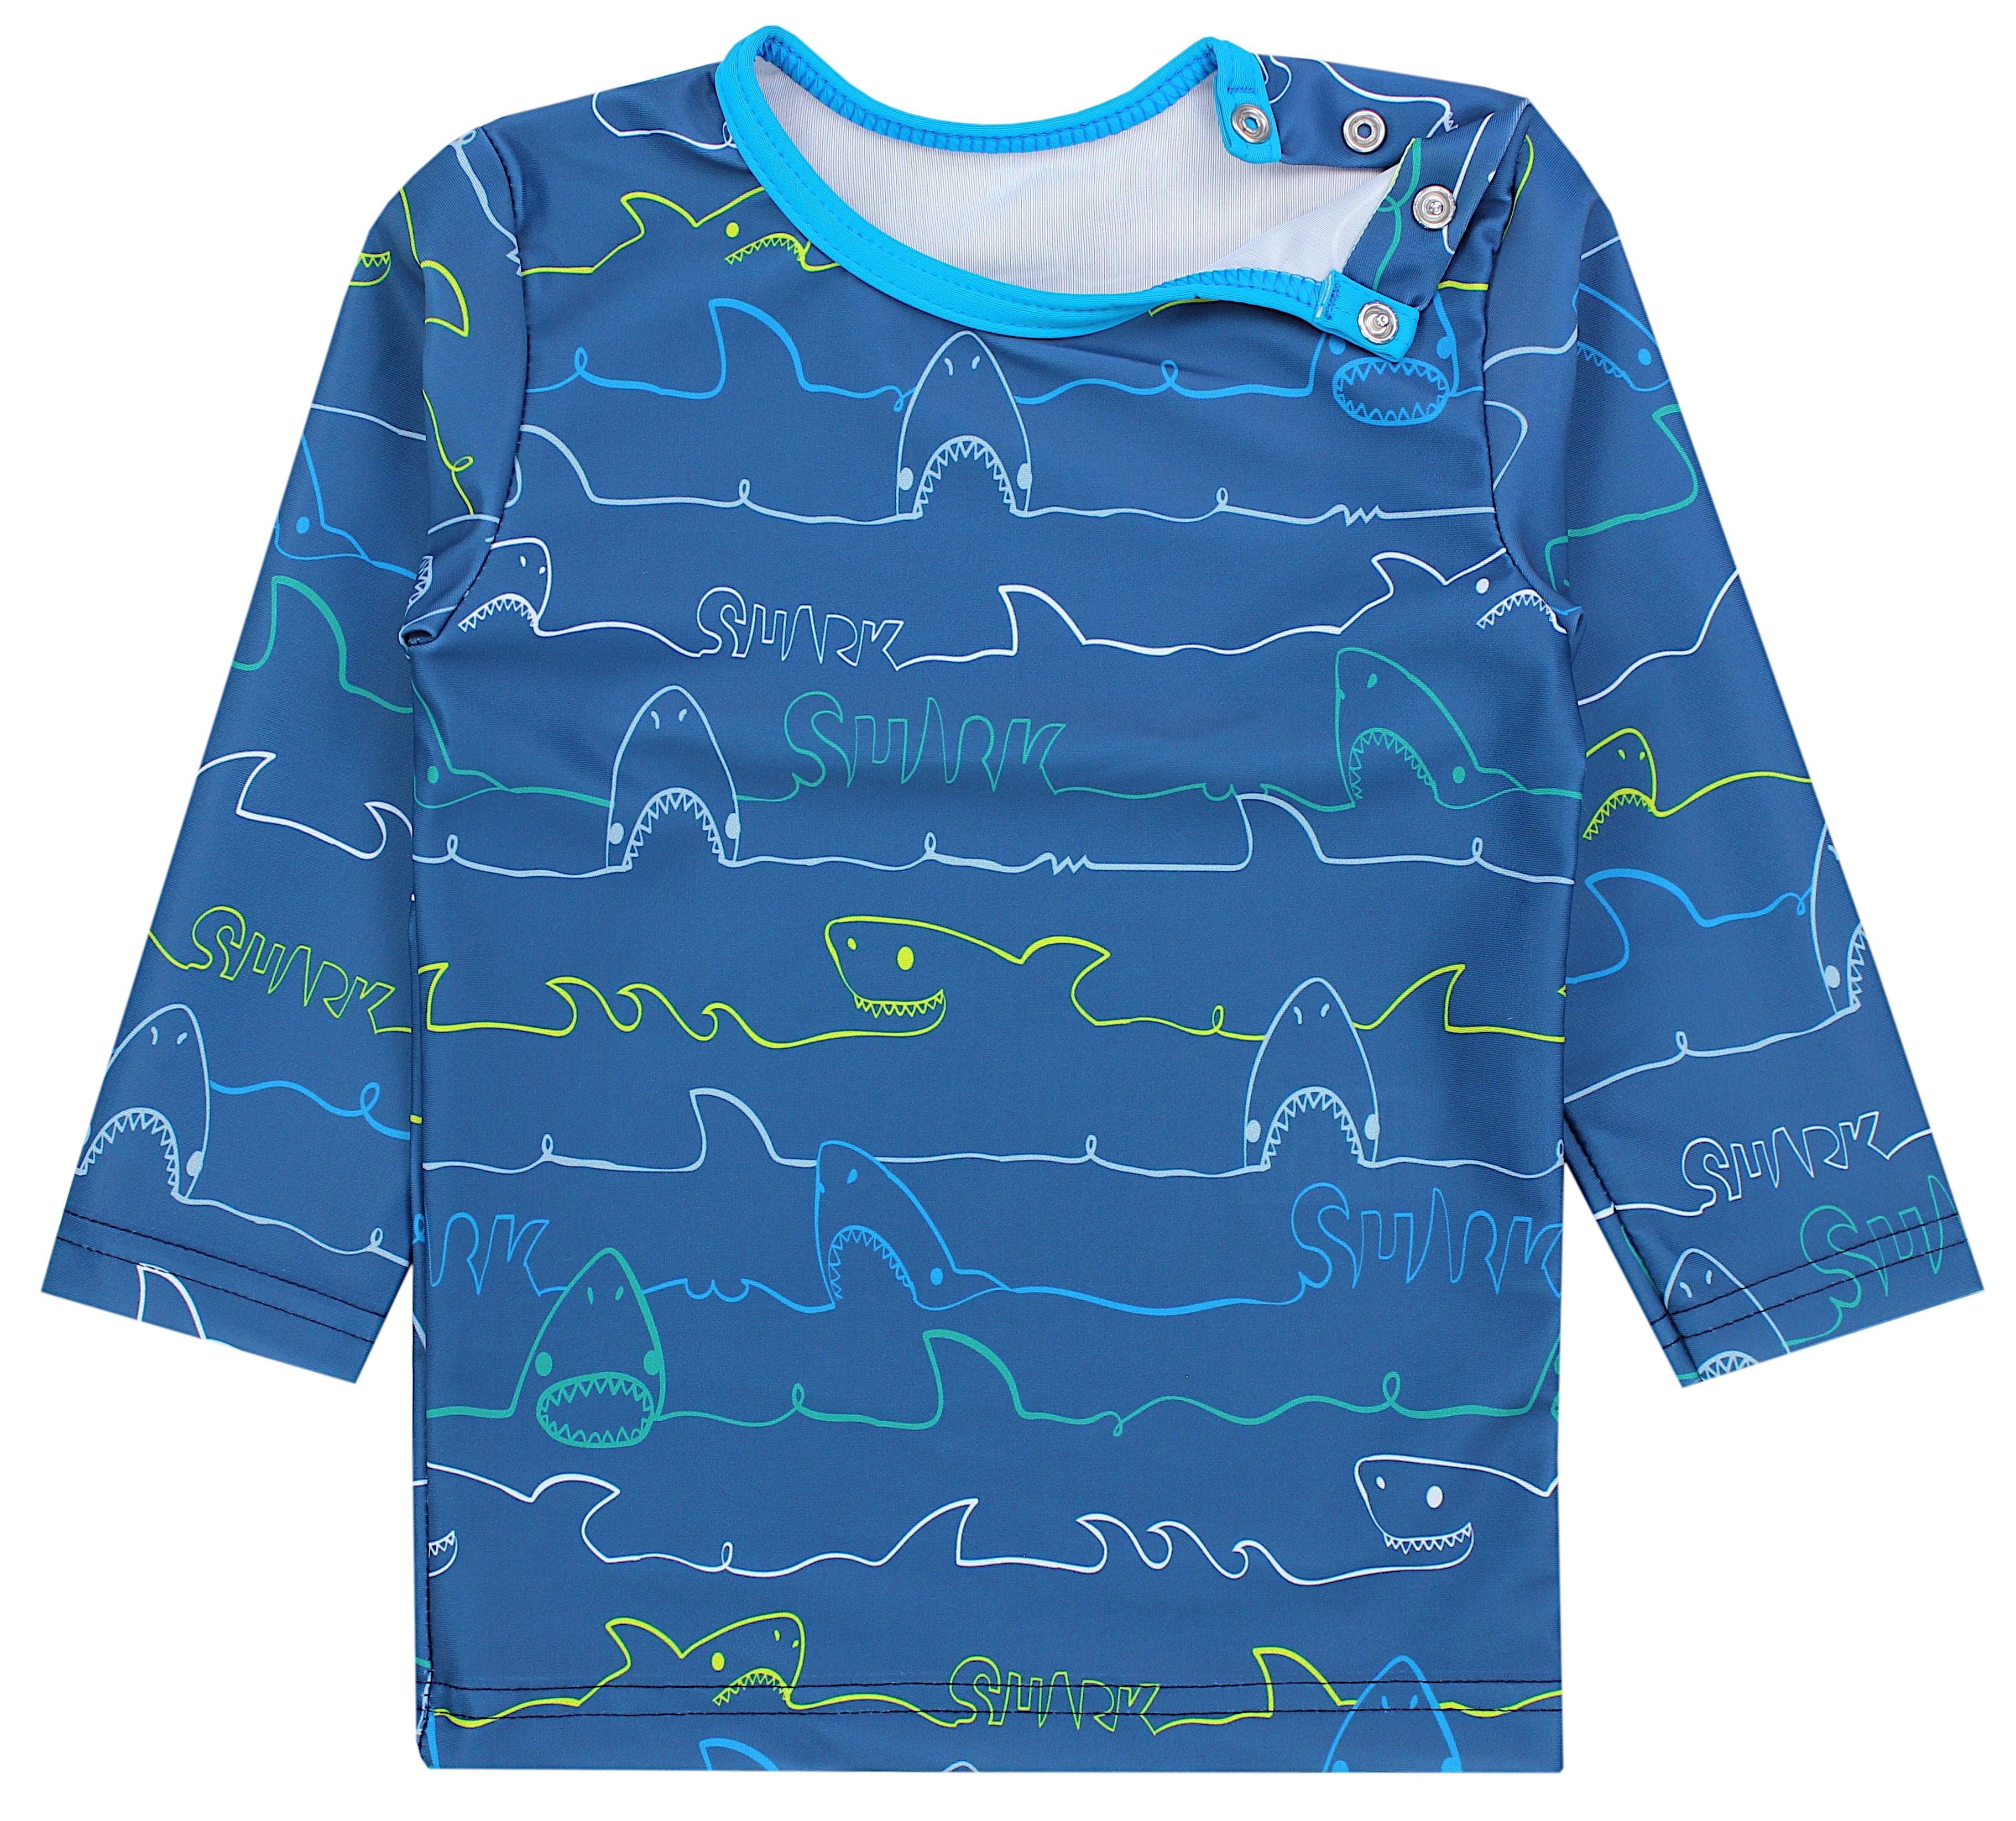 / Badeanzug Haie Badehose / UV-Schutz Jungen Kinder Baby / Jeans T-Shirt Langarm Aquarti Zweiteiliger Blau Badeanzug